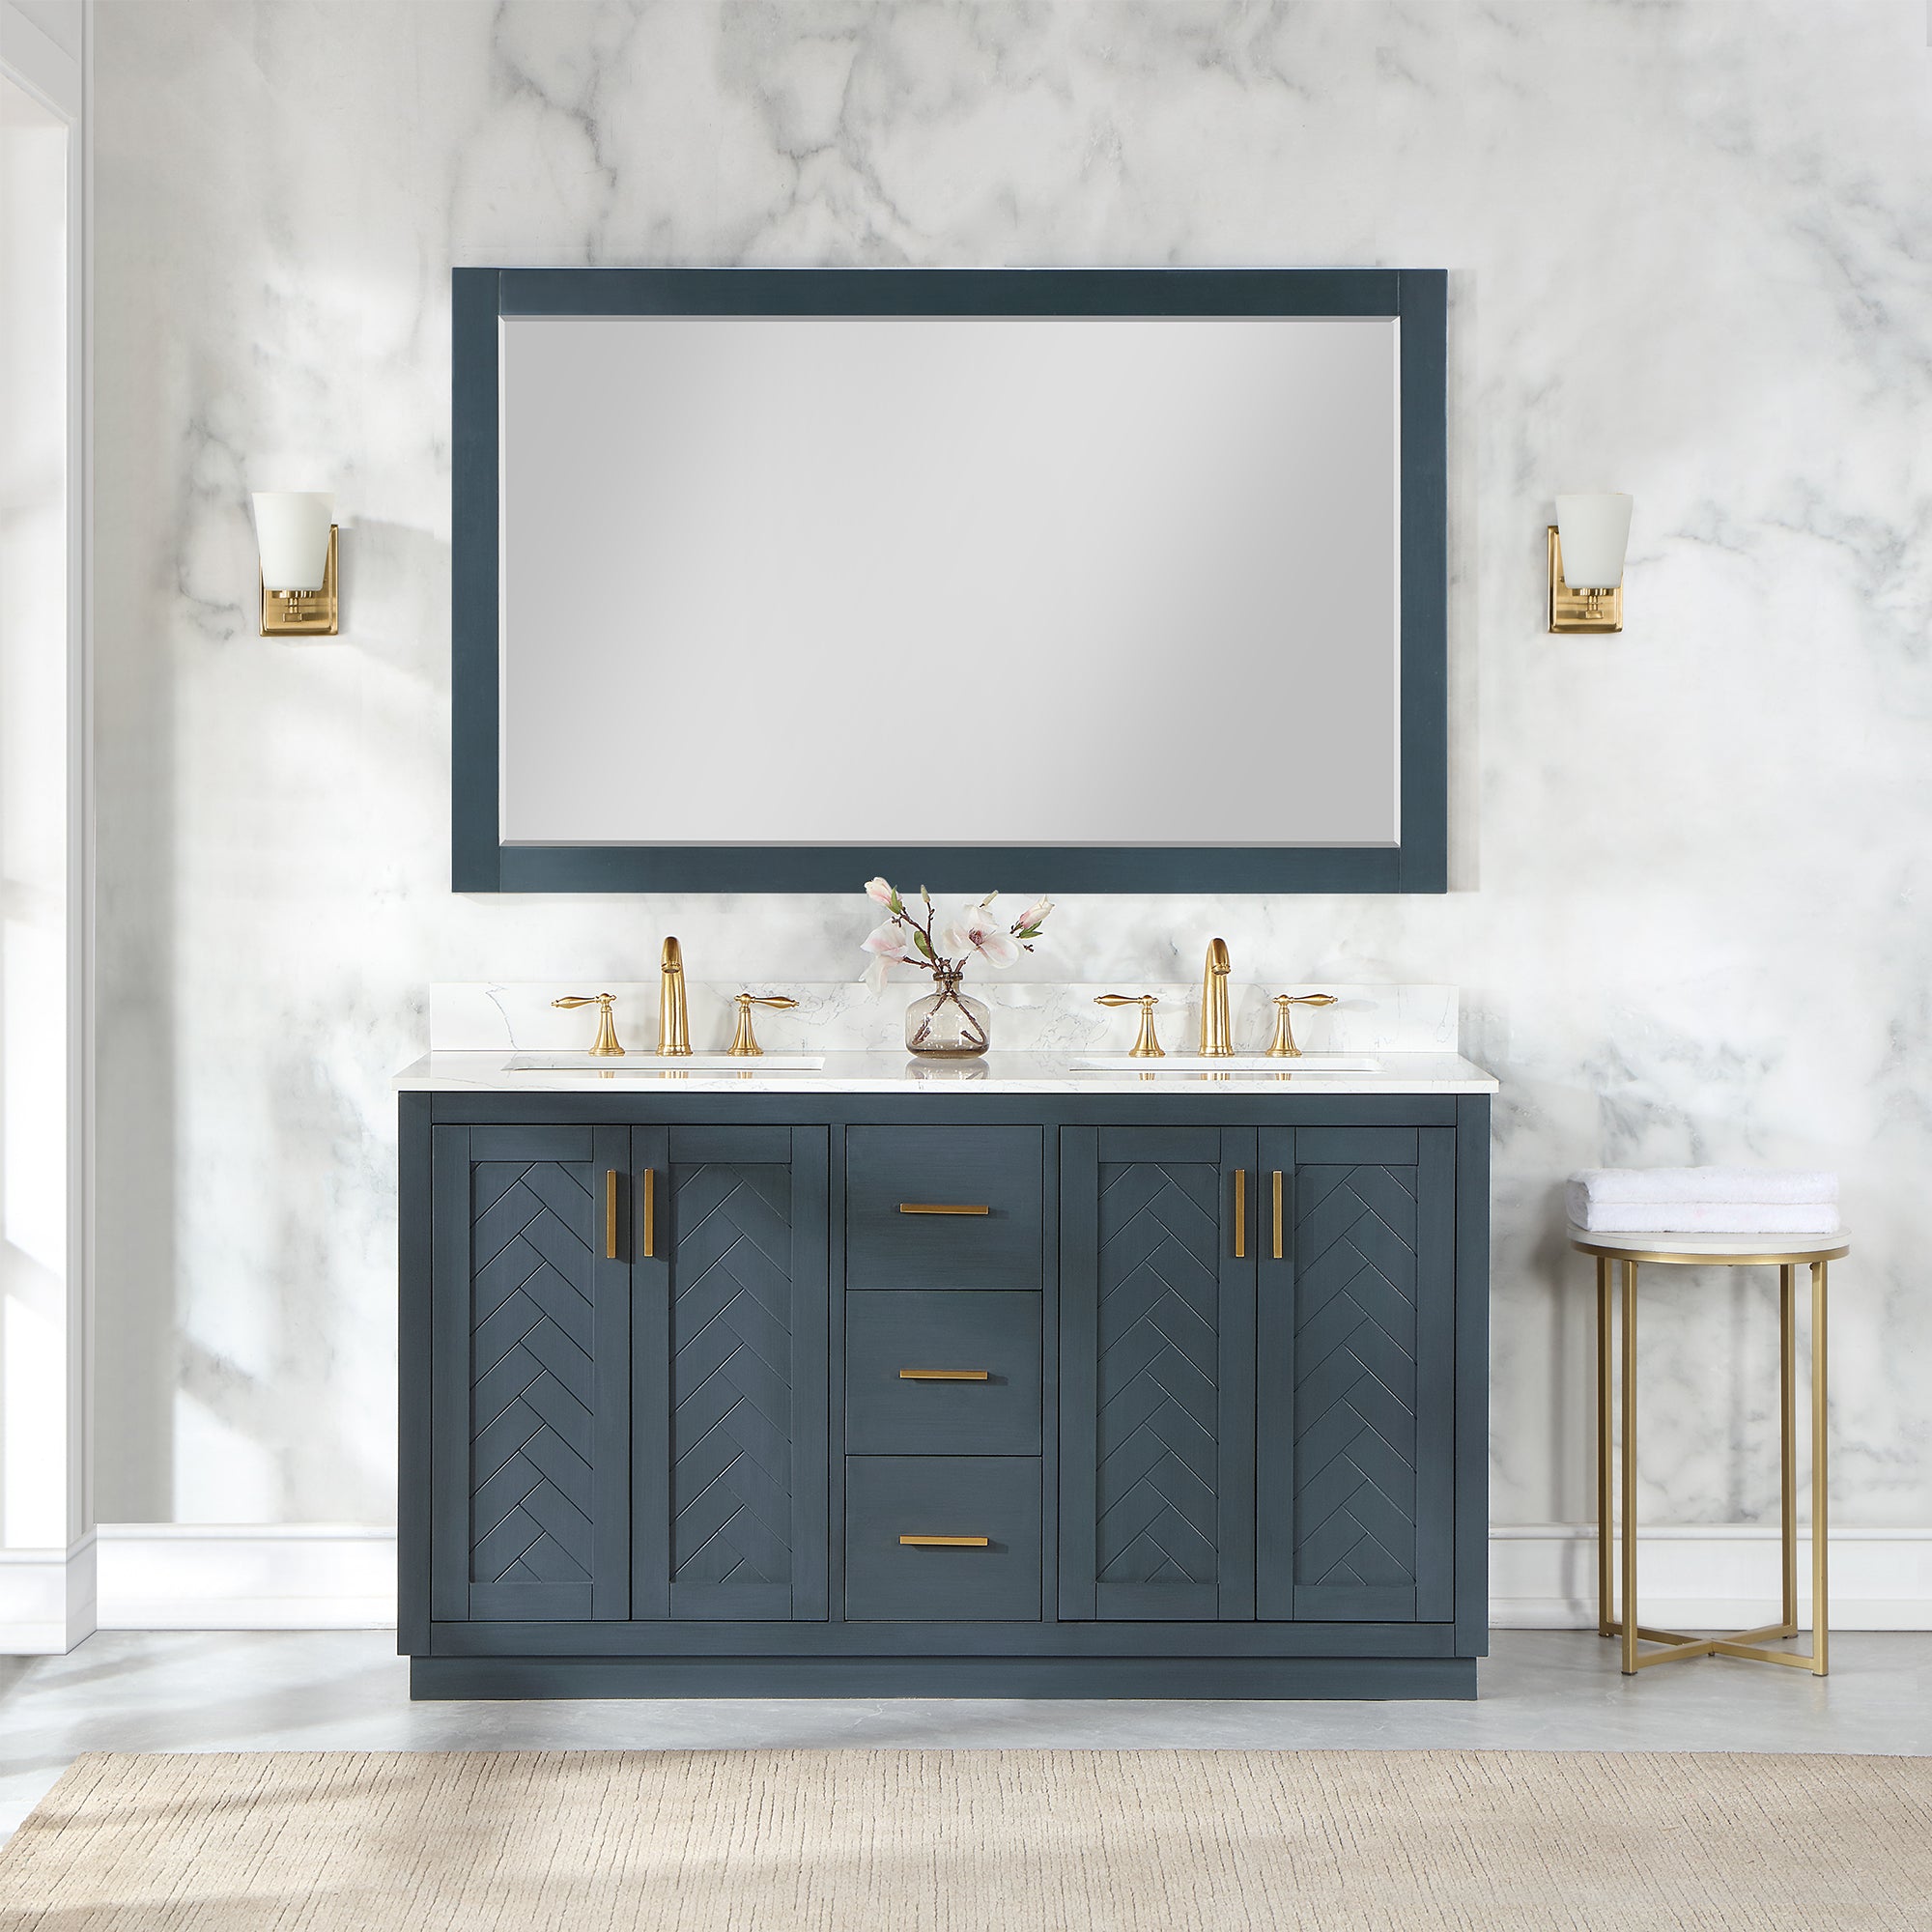 Maribella 58" Rectangular Bathroom Wood Framed Wall Mirror